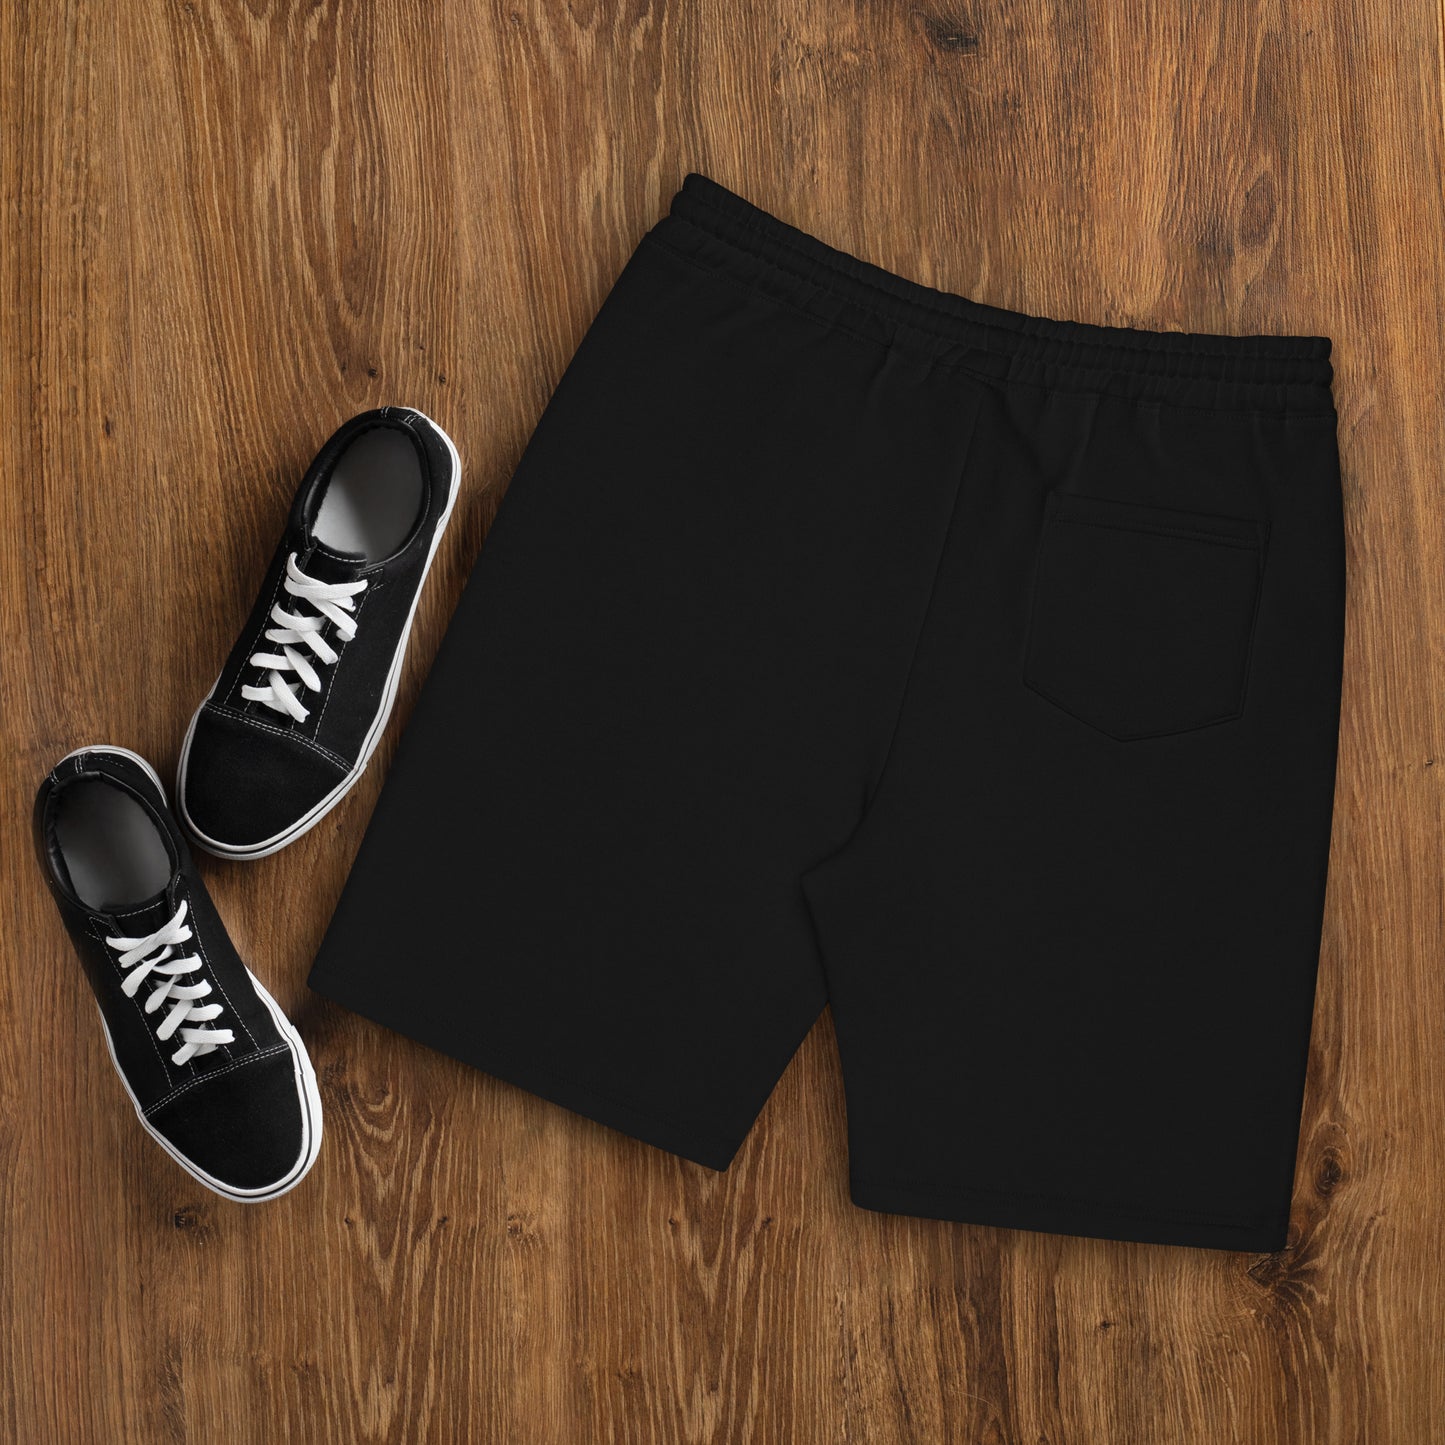 Y&G Men's Fleece Shorts (Black & Grey)